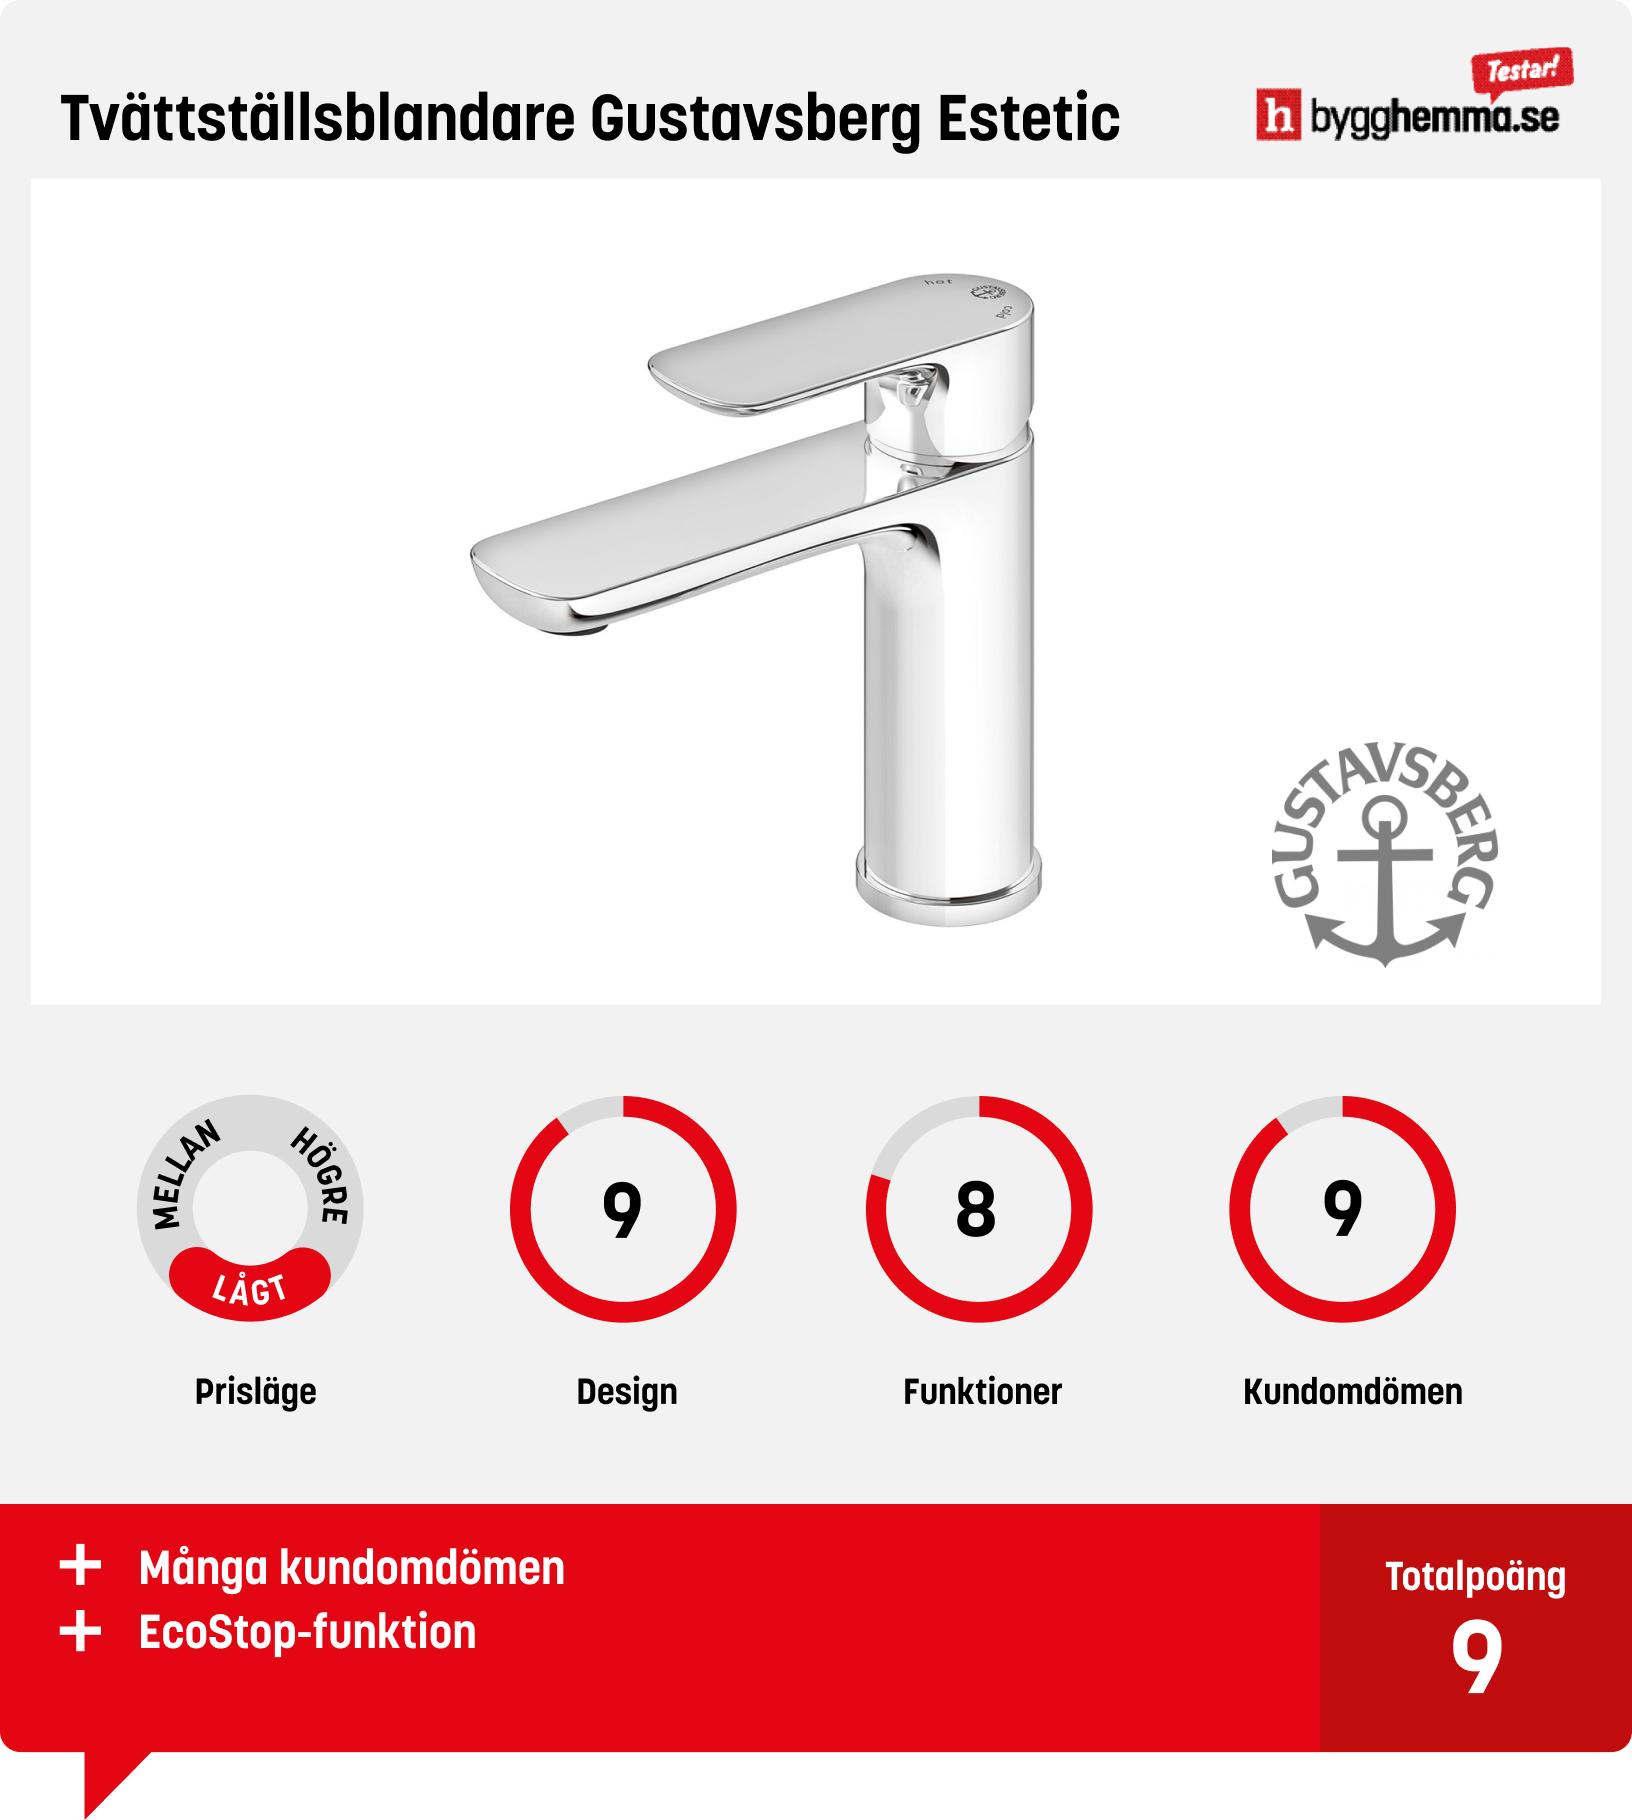 Tvättställsblandare bäst i test - Tvättställsblandare Gustavsberg Estetic